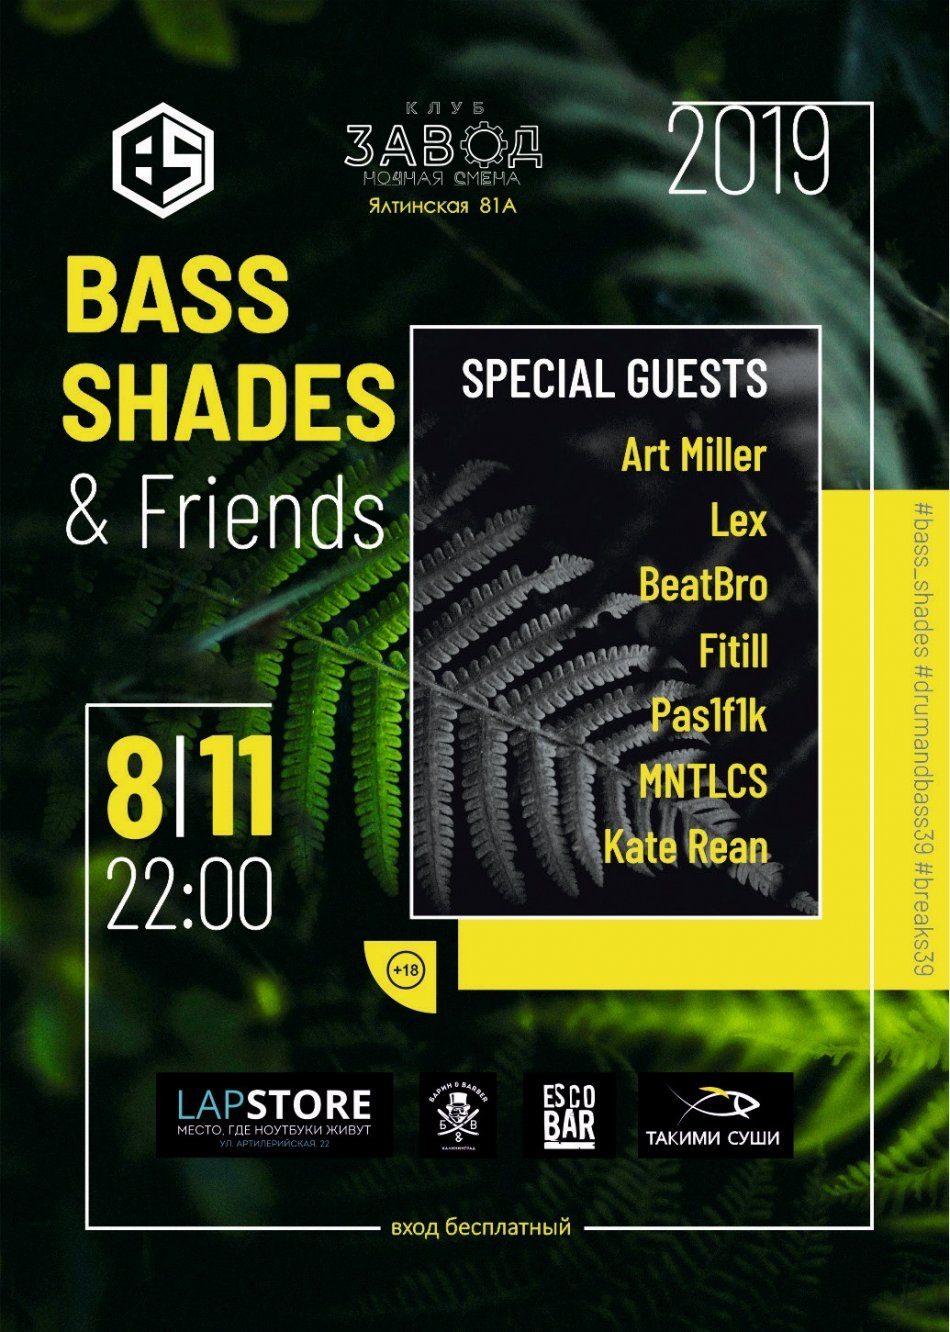 Bass Shades & Friends